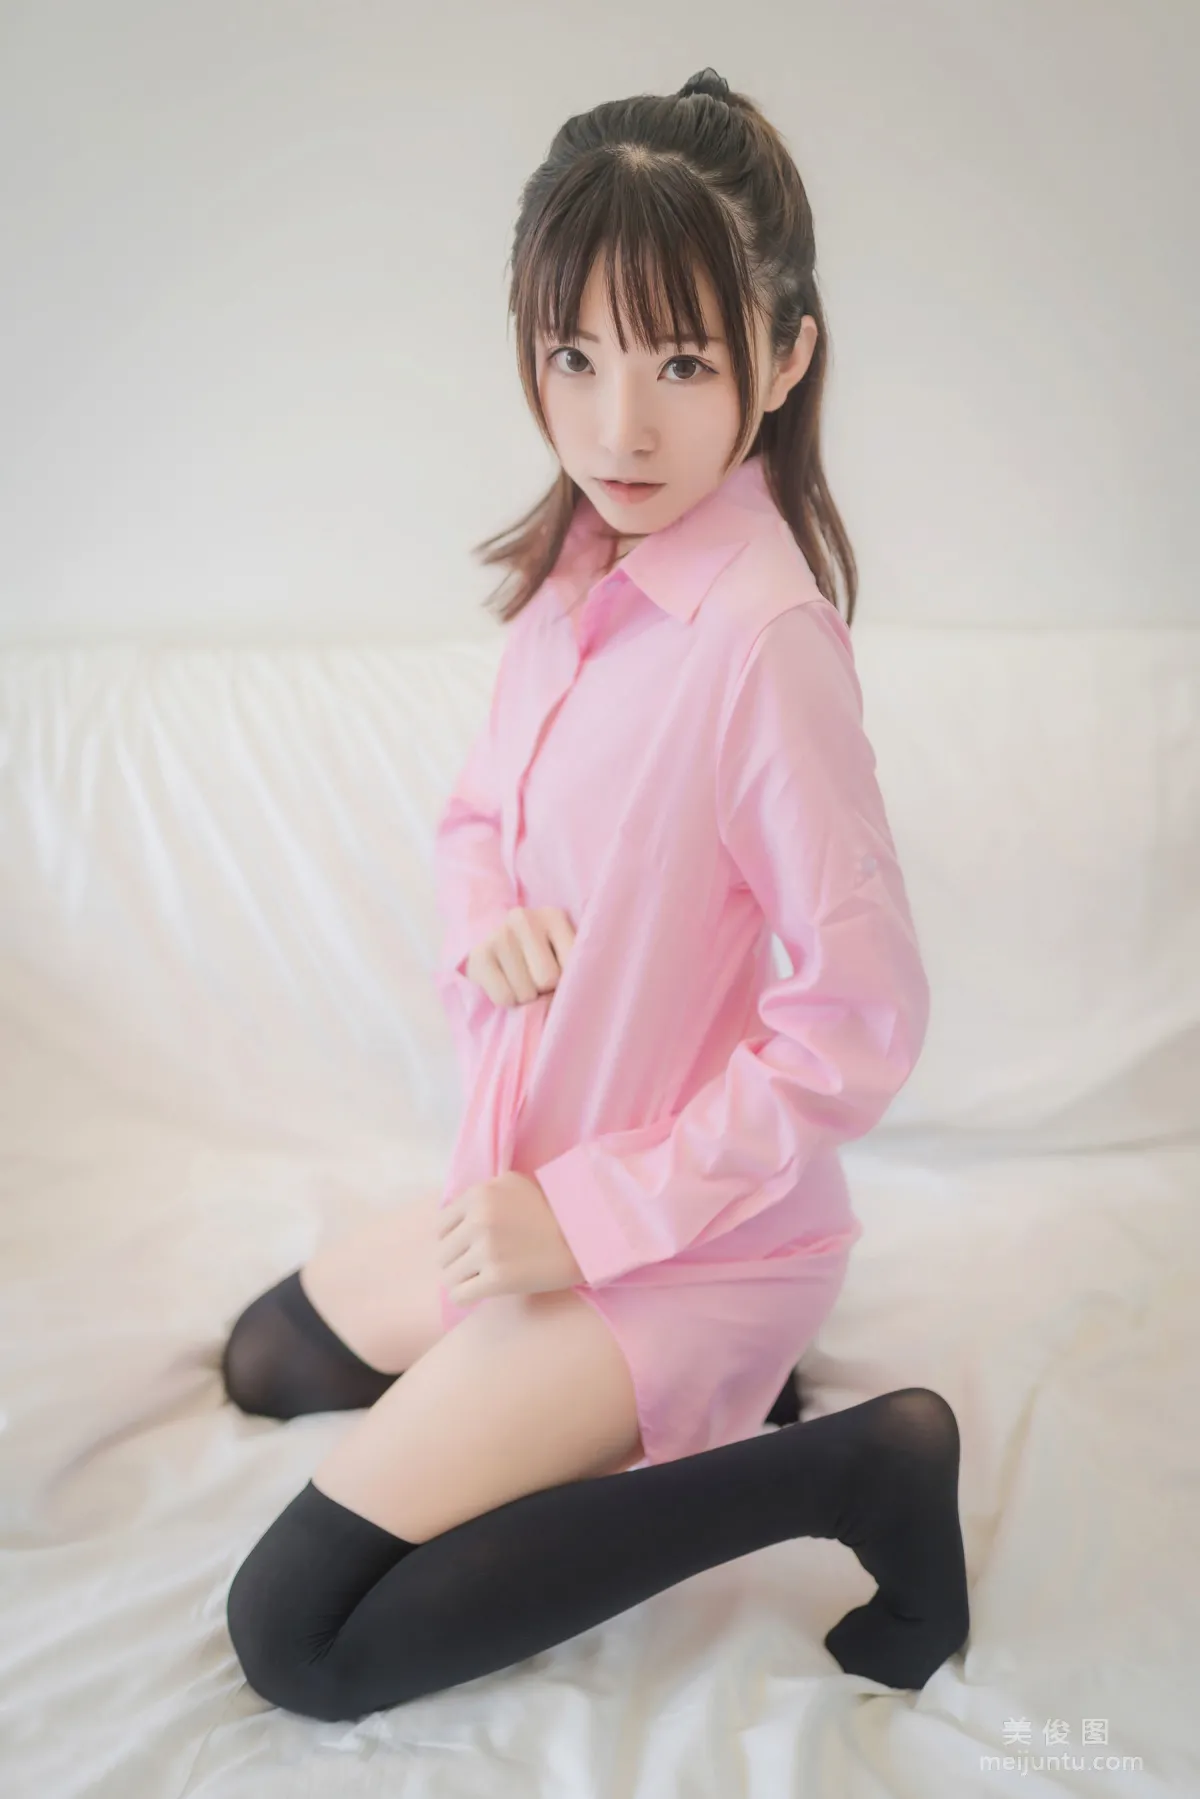 [网红COSER] Kitaro_绮太郎 - 粉色衬衫 写真集37